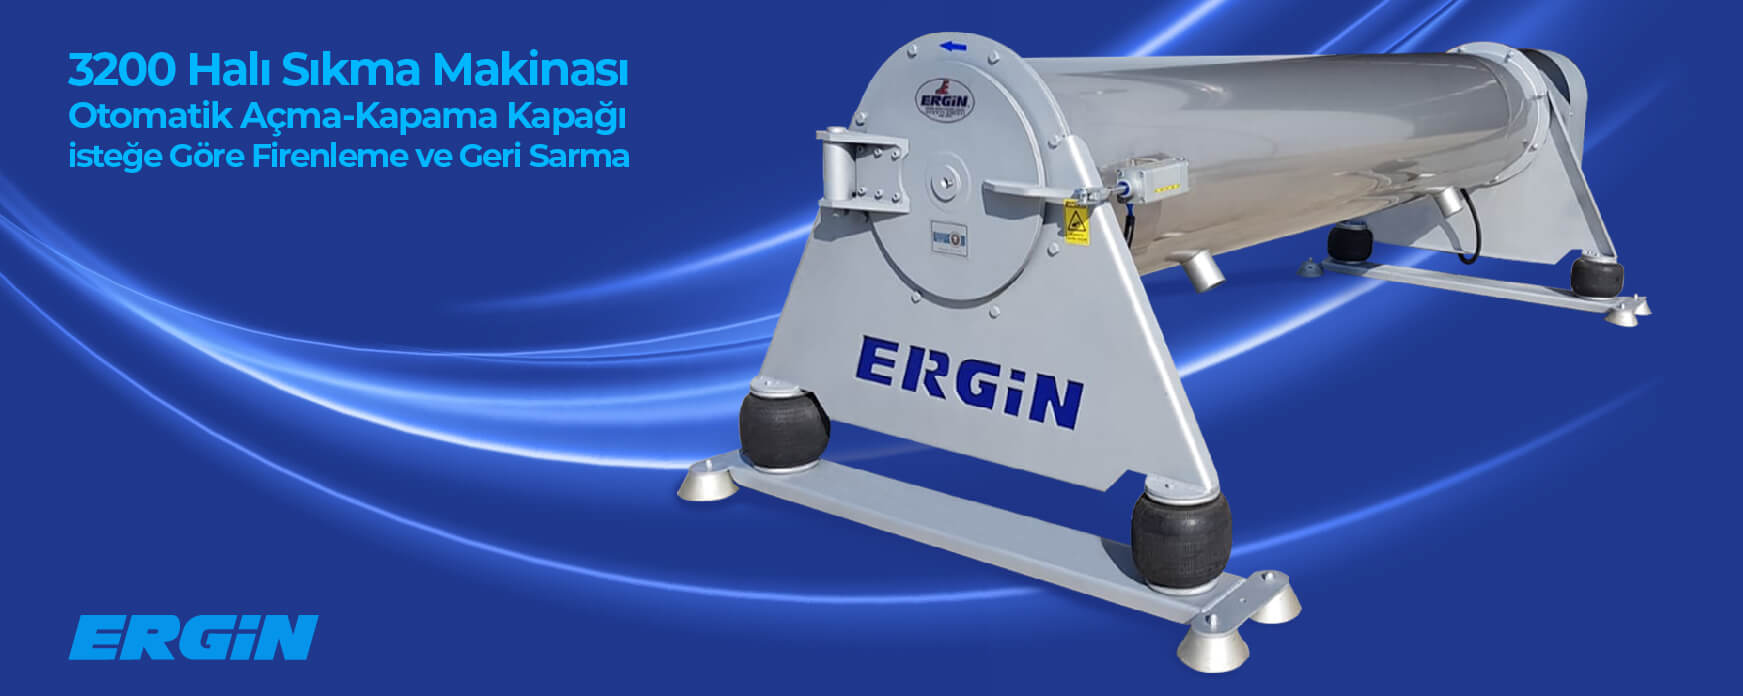 Machine à laver les tapis Çimtaş HSM 330-38 à vendre Turquie İZMİR, QW35457